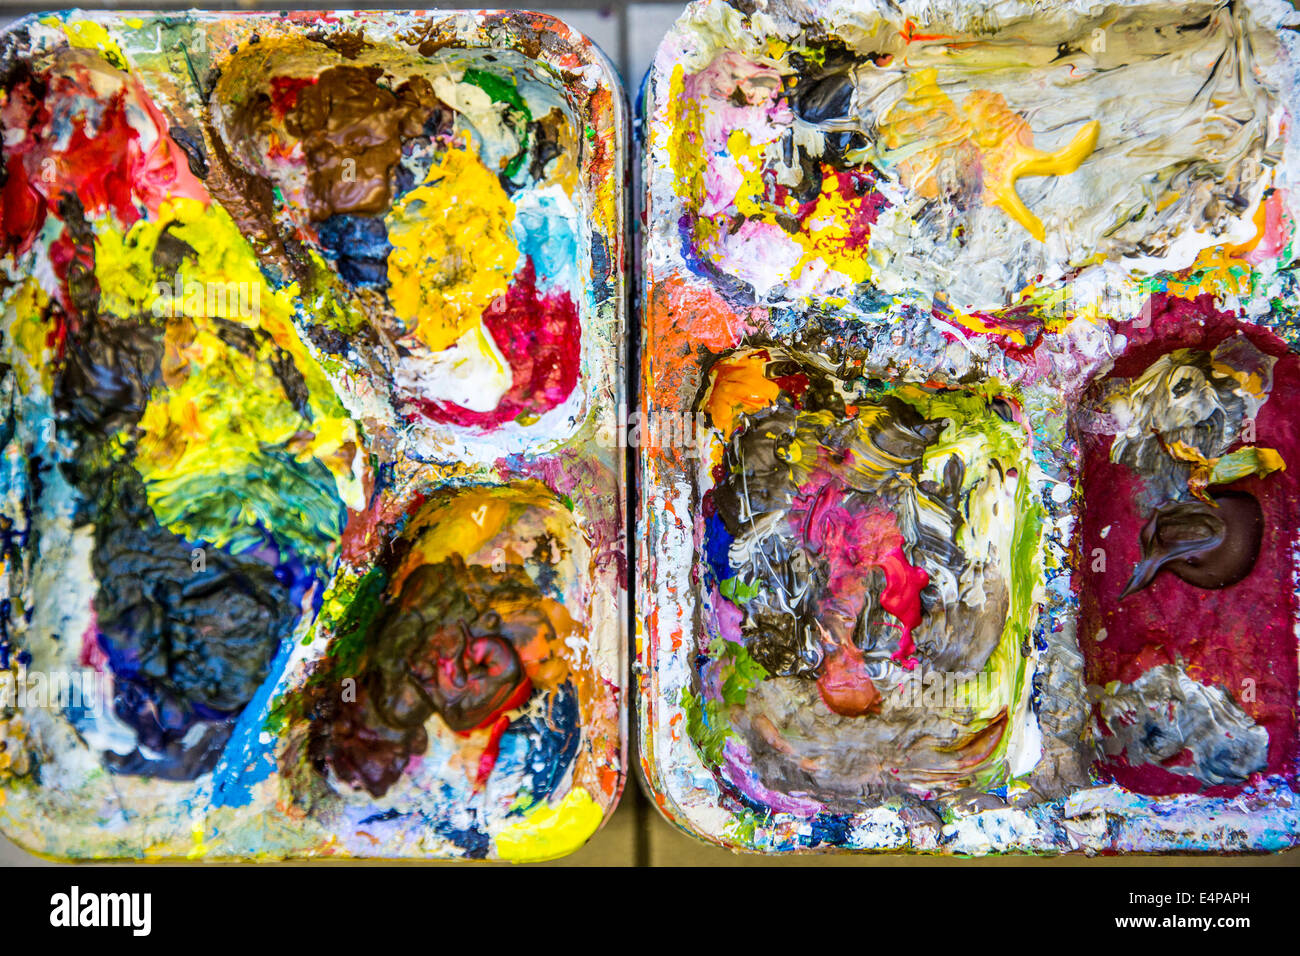 Paleta de colores, recipiente para la mezcla de colores en una escuela de pintura, pintura, Foto de stock